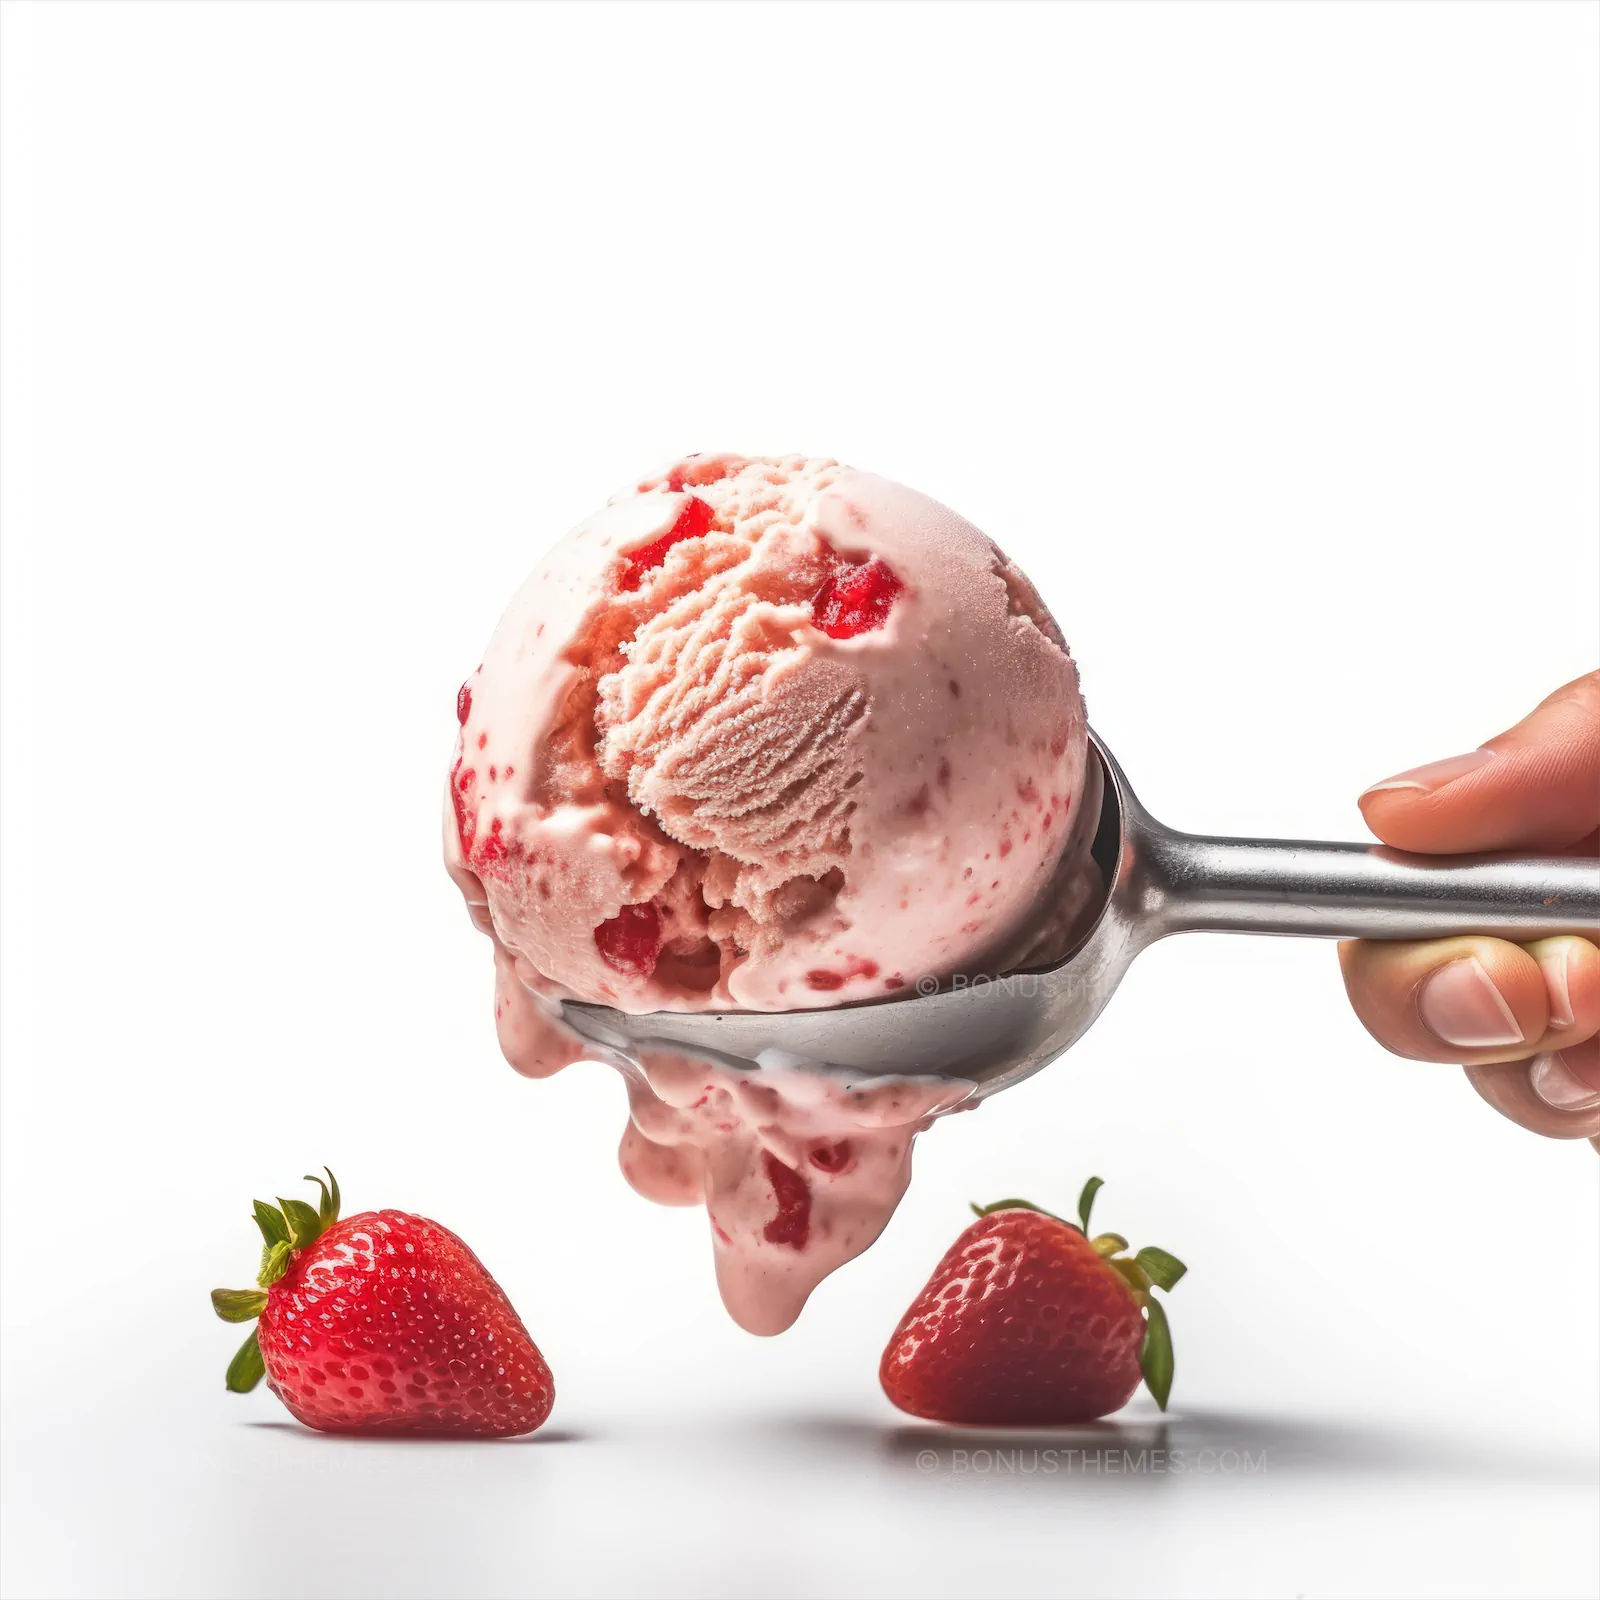 Ice cream scoop with strawberries